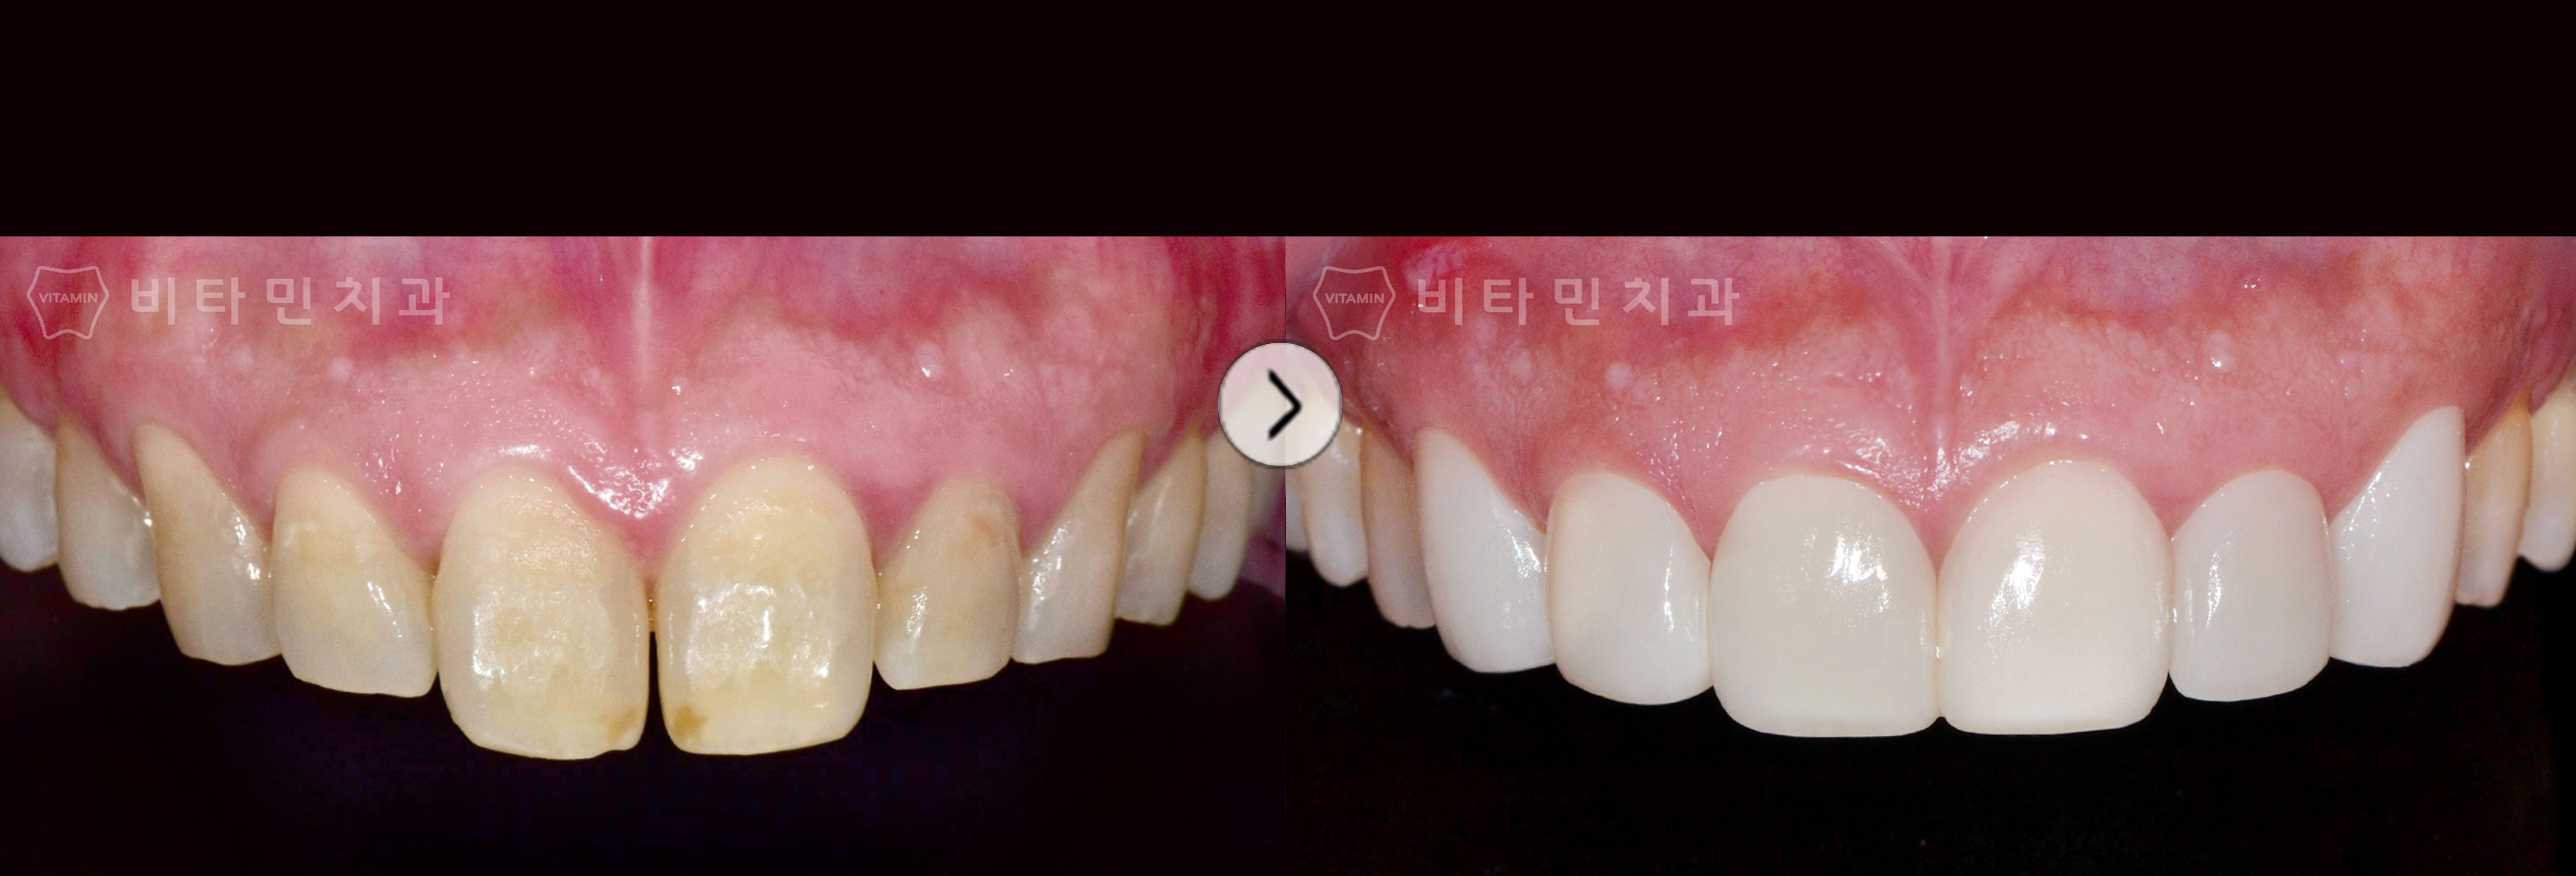 긴 앞니와 전체적으로 누렇게 착색된 치아를 심미적으로 건강하게 개선